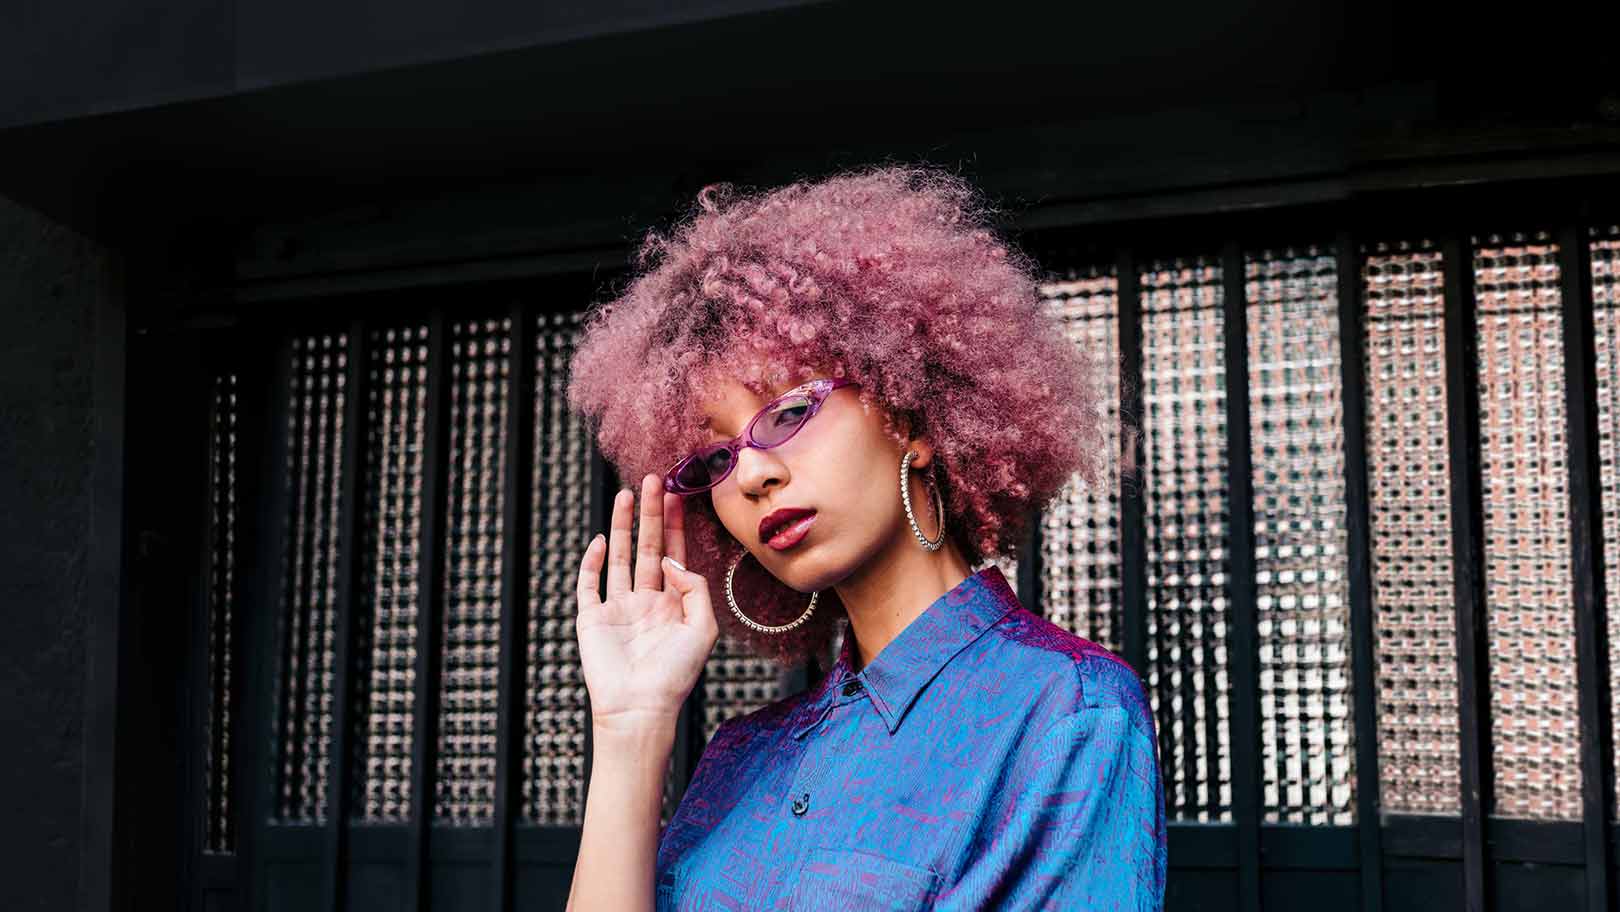 Junge Frau mit Afrofrisur, violetter Brille und 